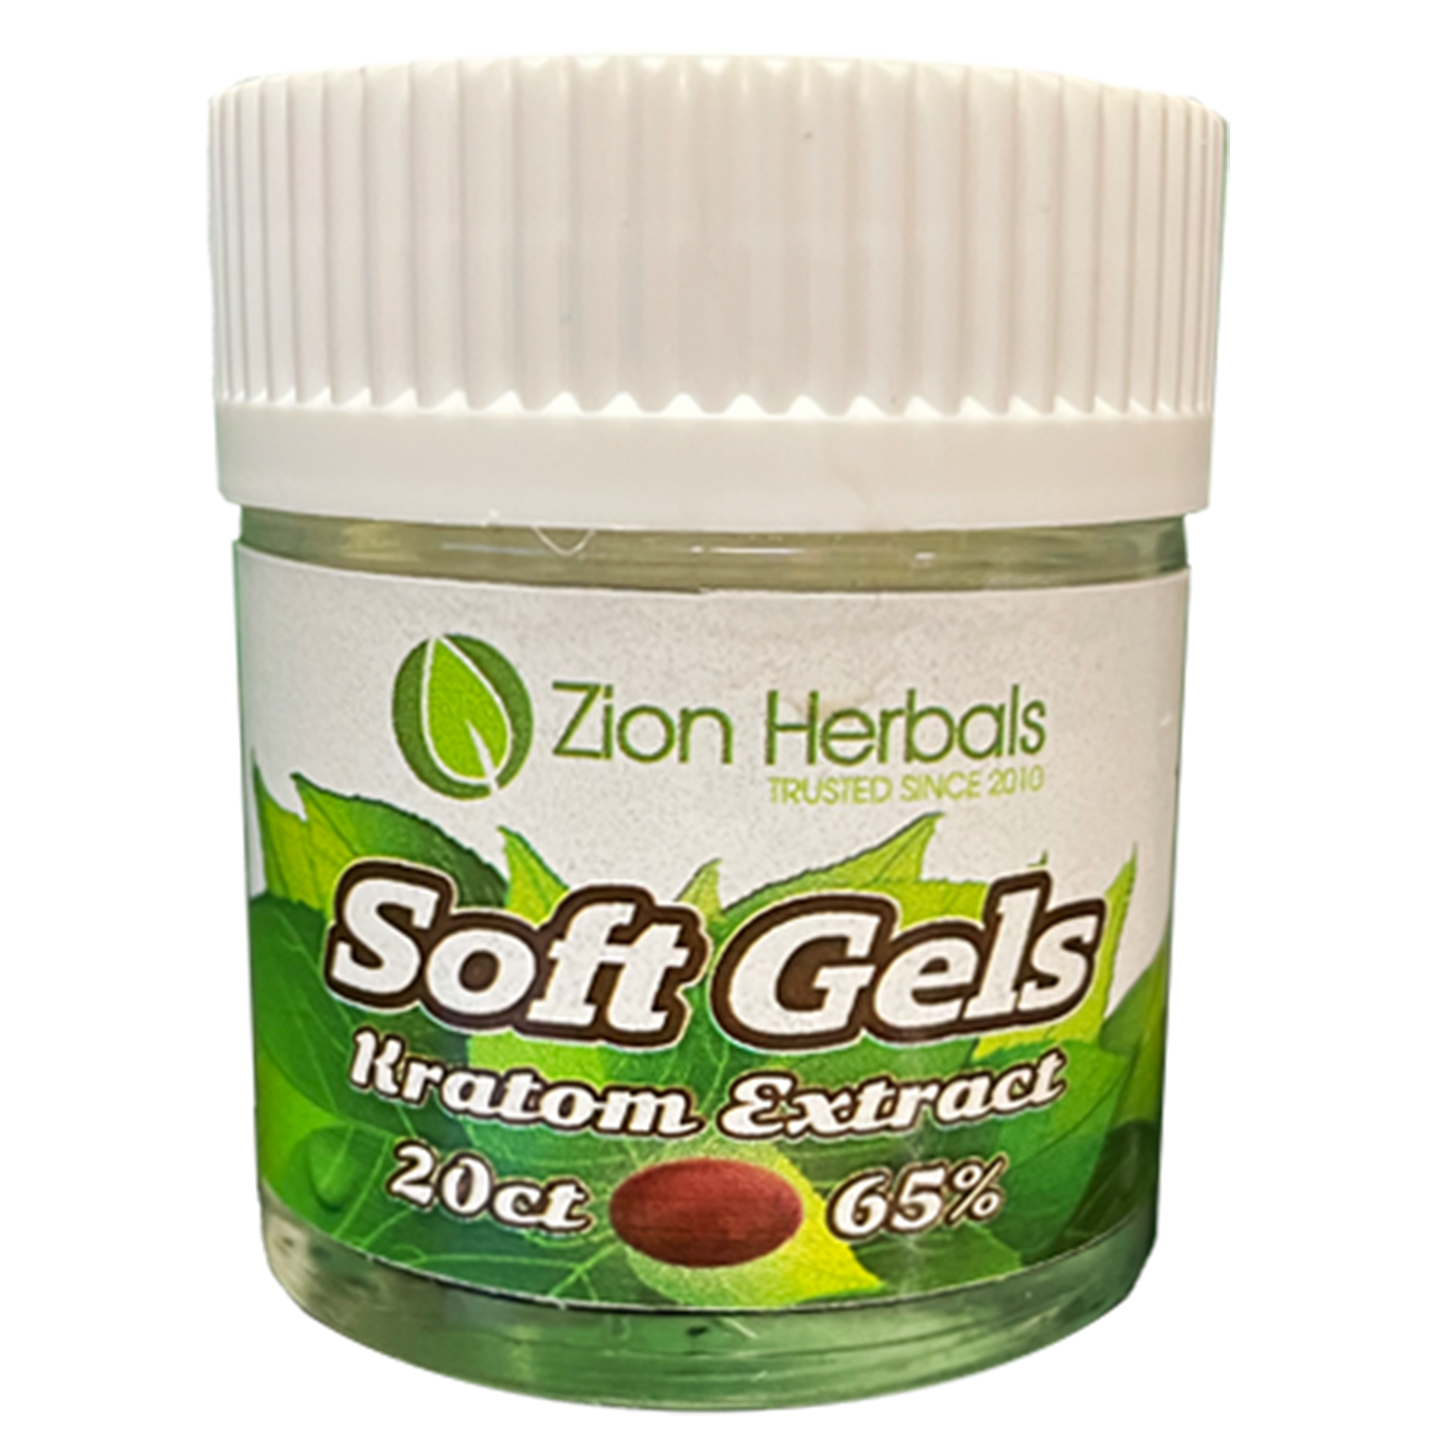 Zion Herbals 65% extract Gelcap Jar